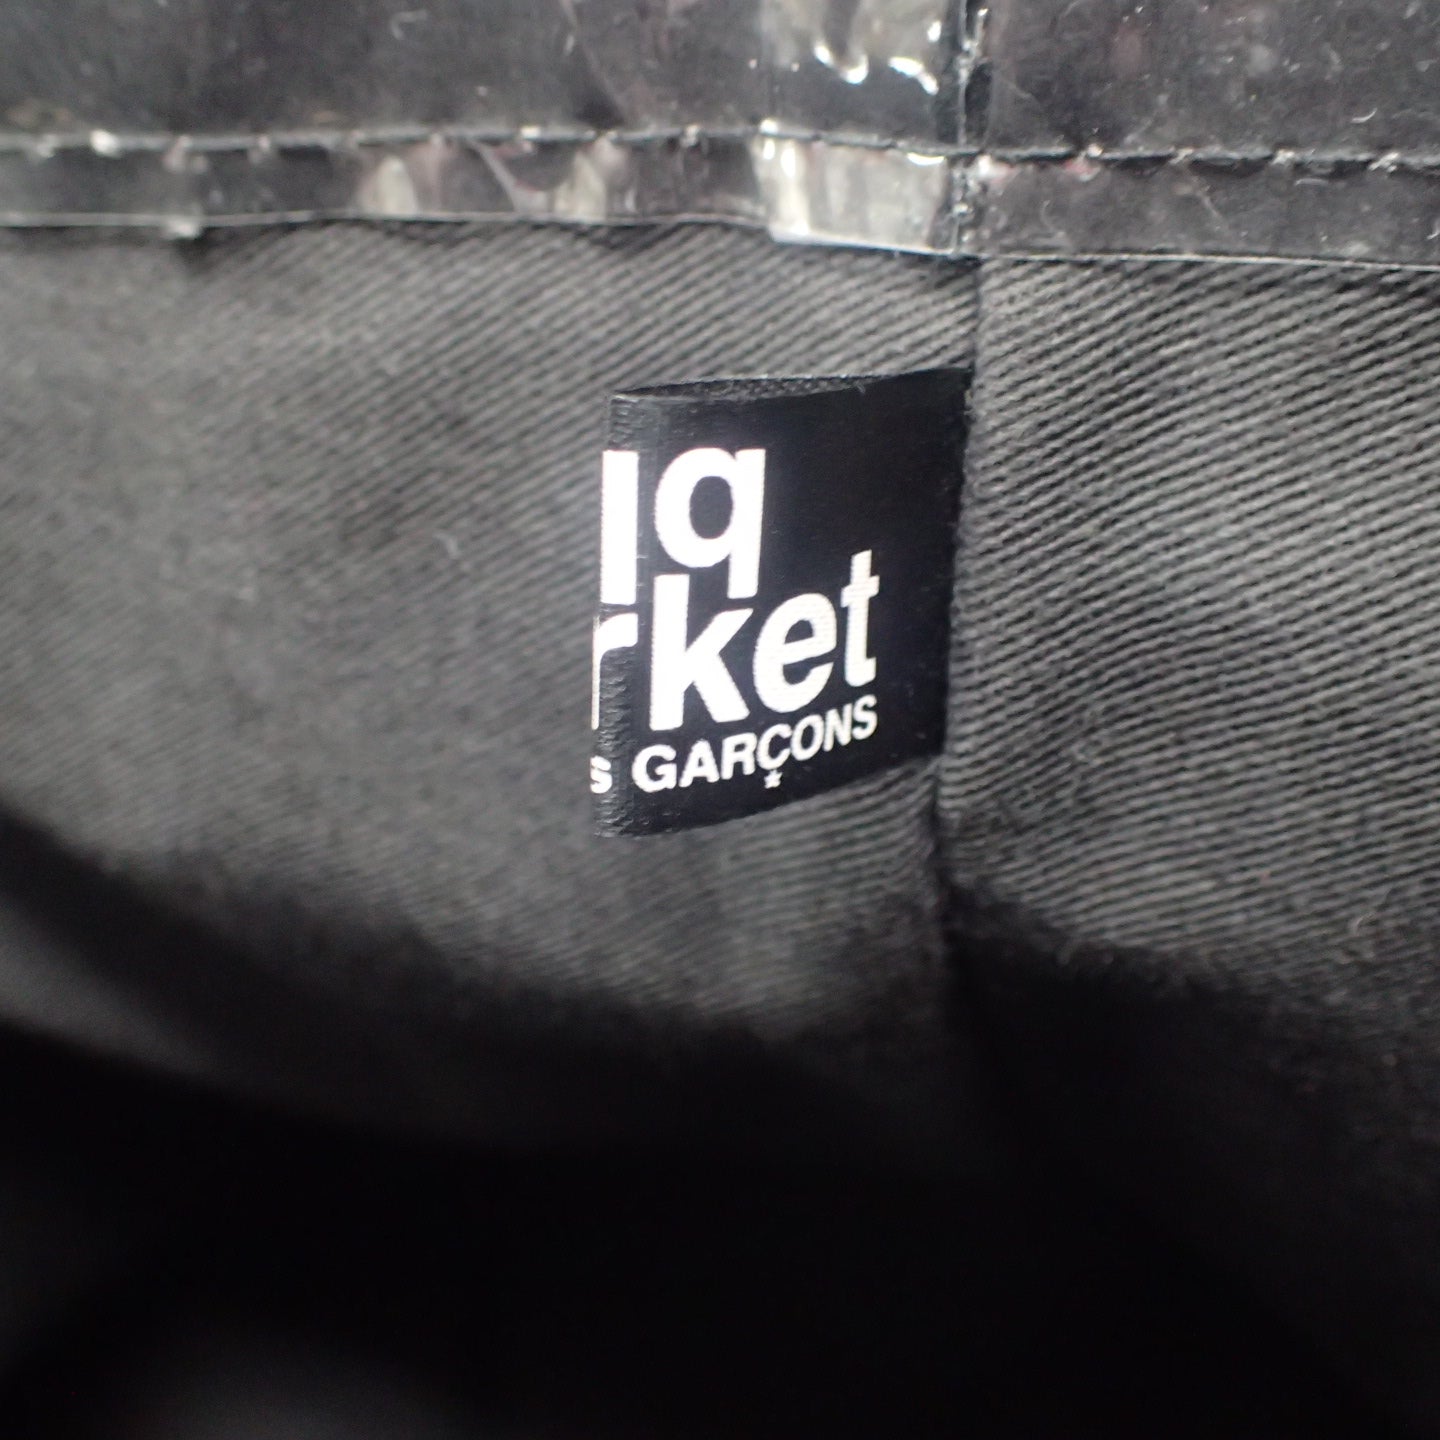 コムデギャルソン ブラックマーケット トートバッグ PVC ブラック GO-K 201 COMME des GARCONS black market【AFE1】【中古】